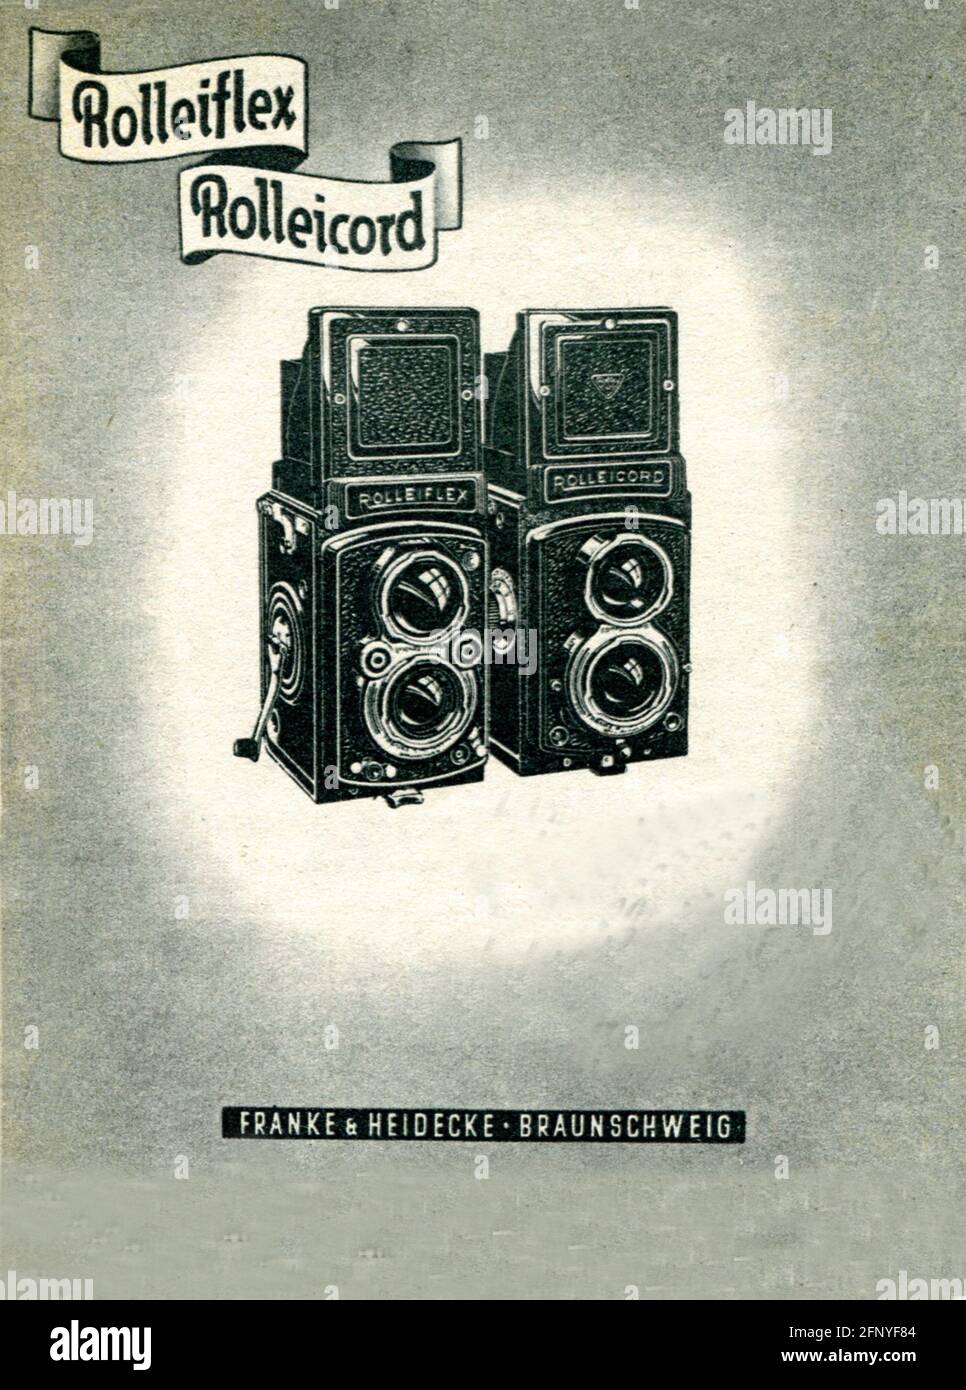 Telecamera Rolleiflex. Vecchio annuncio a stampa d'epoca della rivista Reader's Digest, edizione italiana 1952 Foto Stock